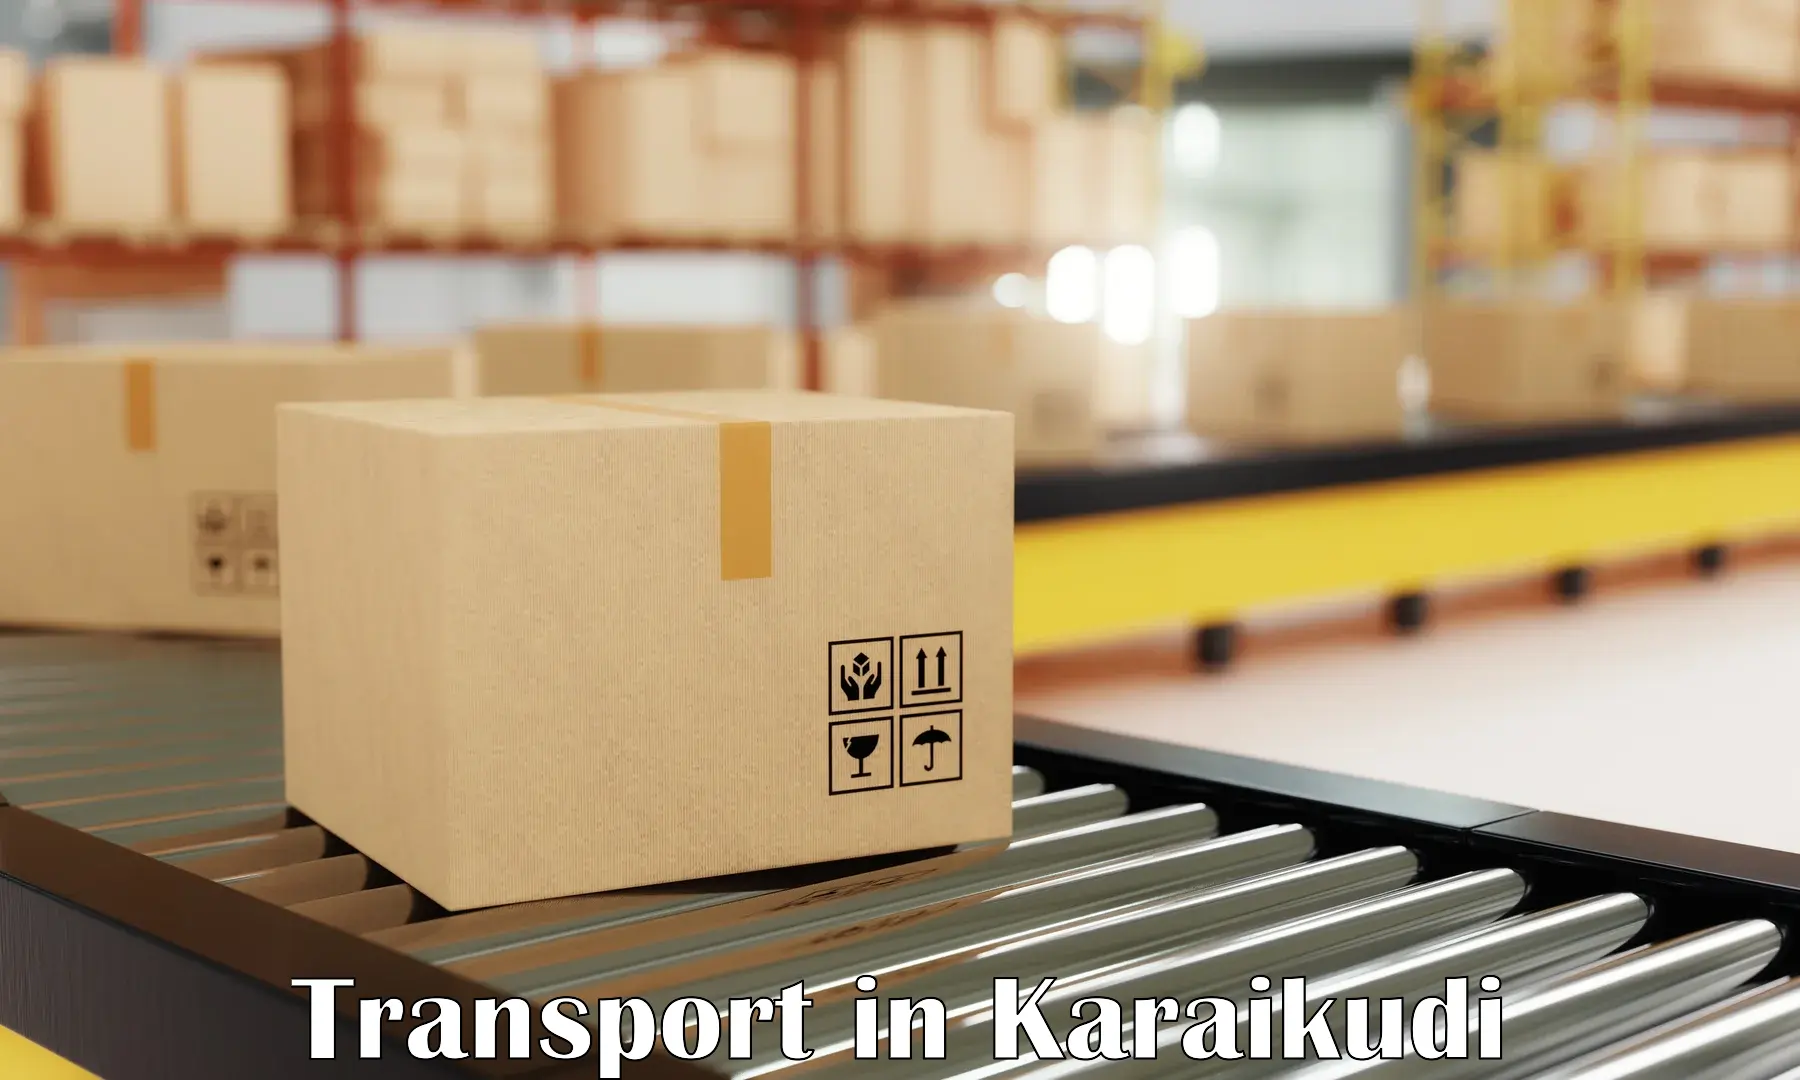 Online transport booking in Karaikudi